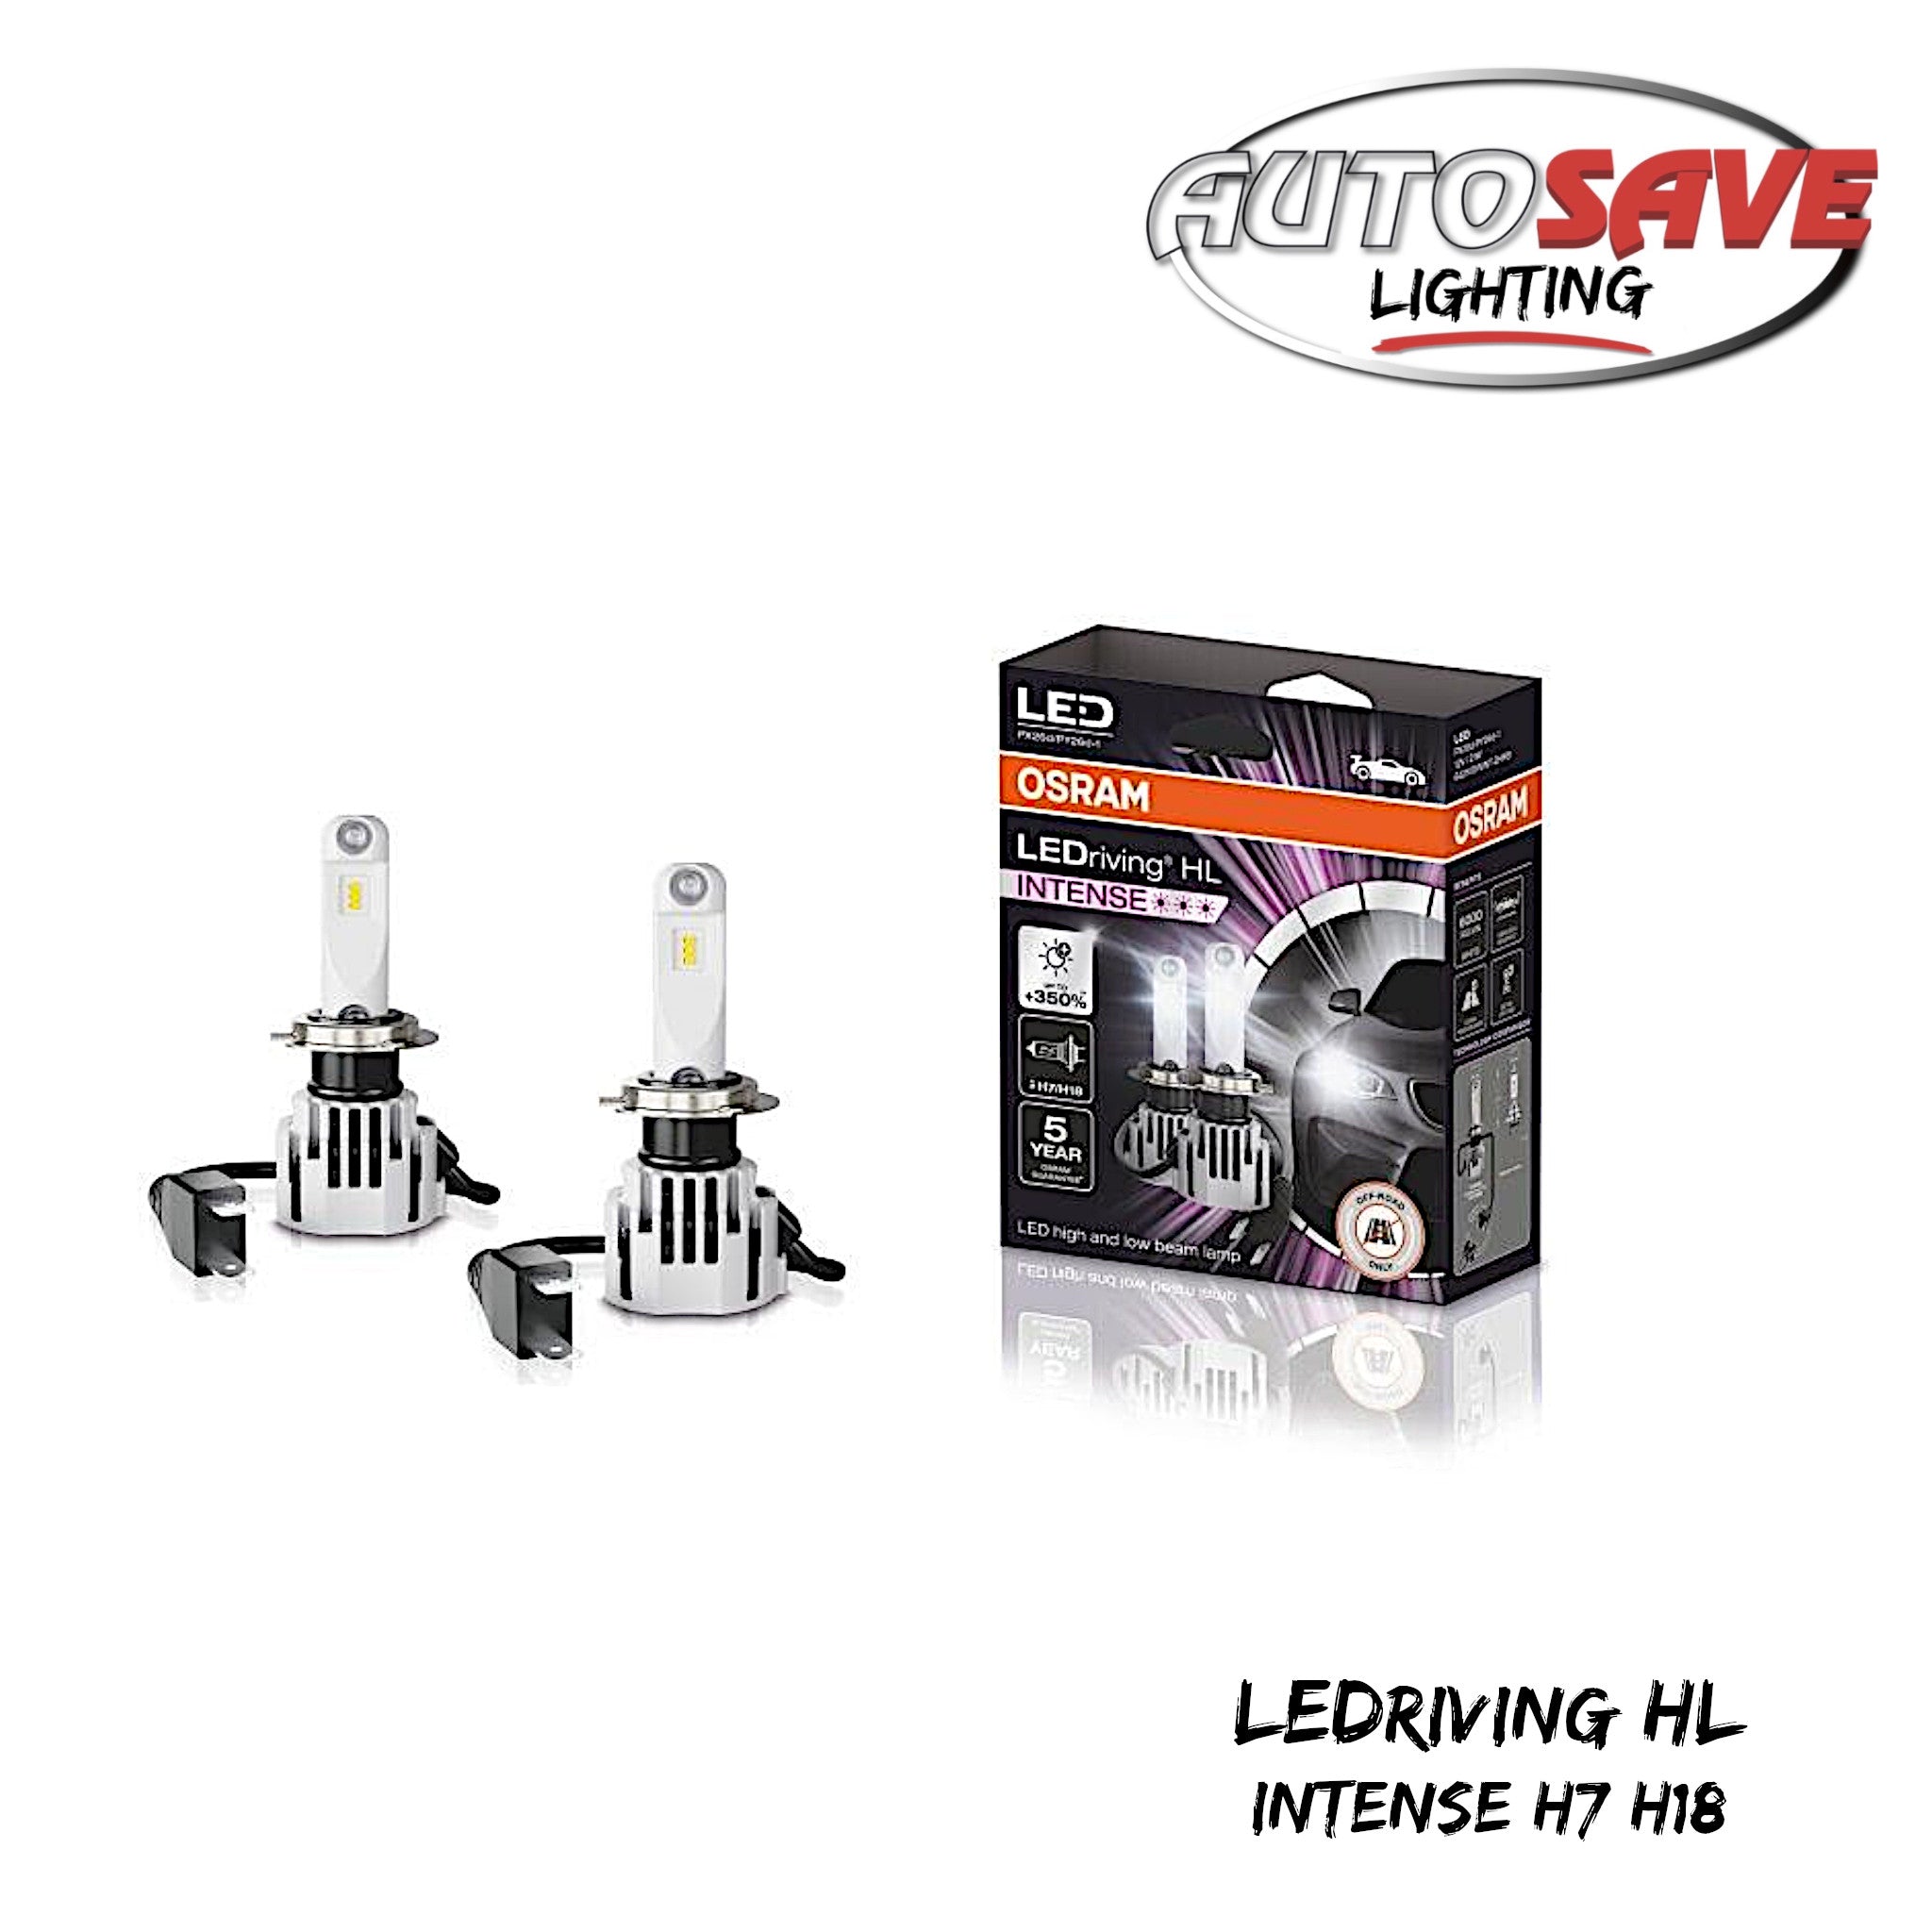 LEDriving HL EASY H7/H18